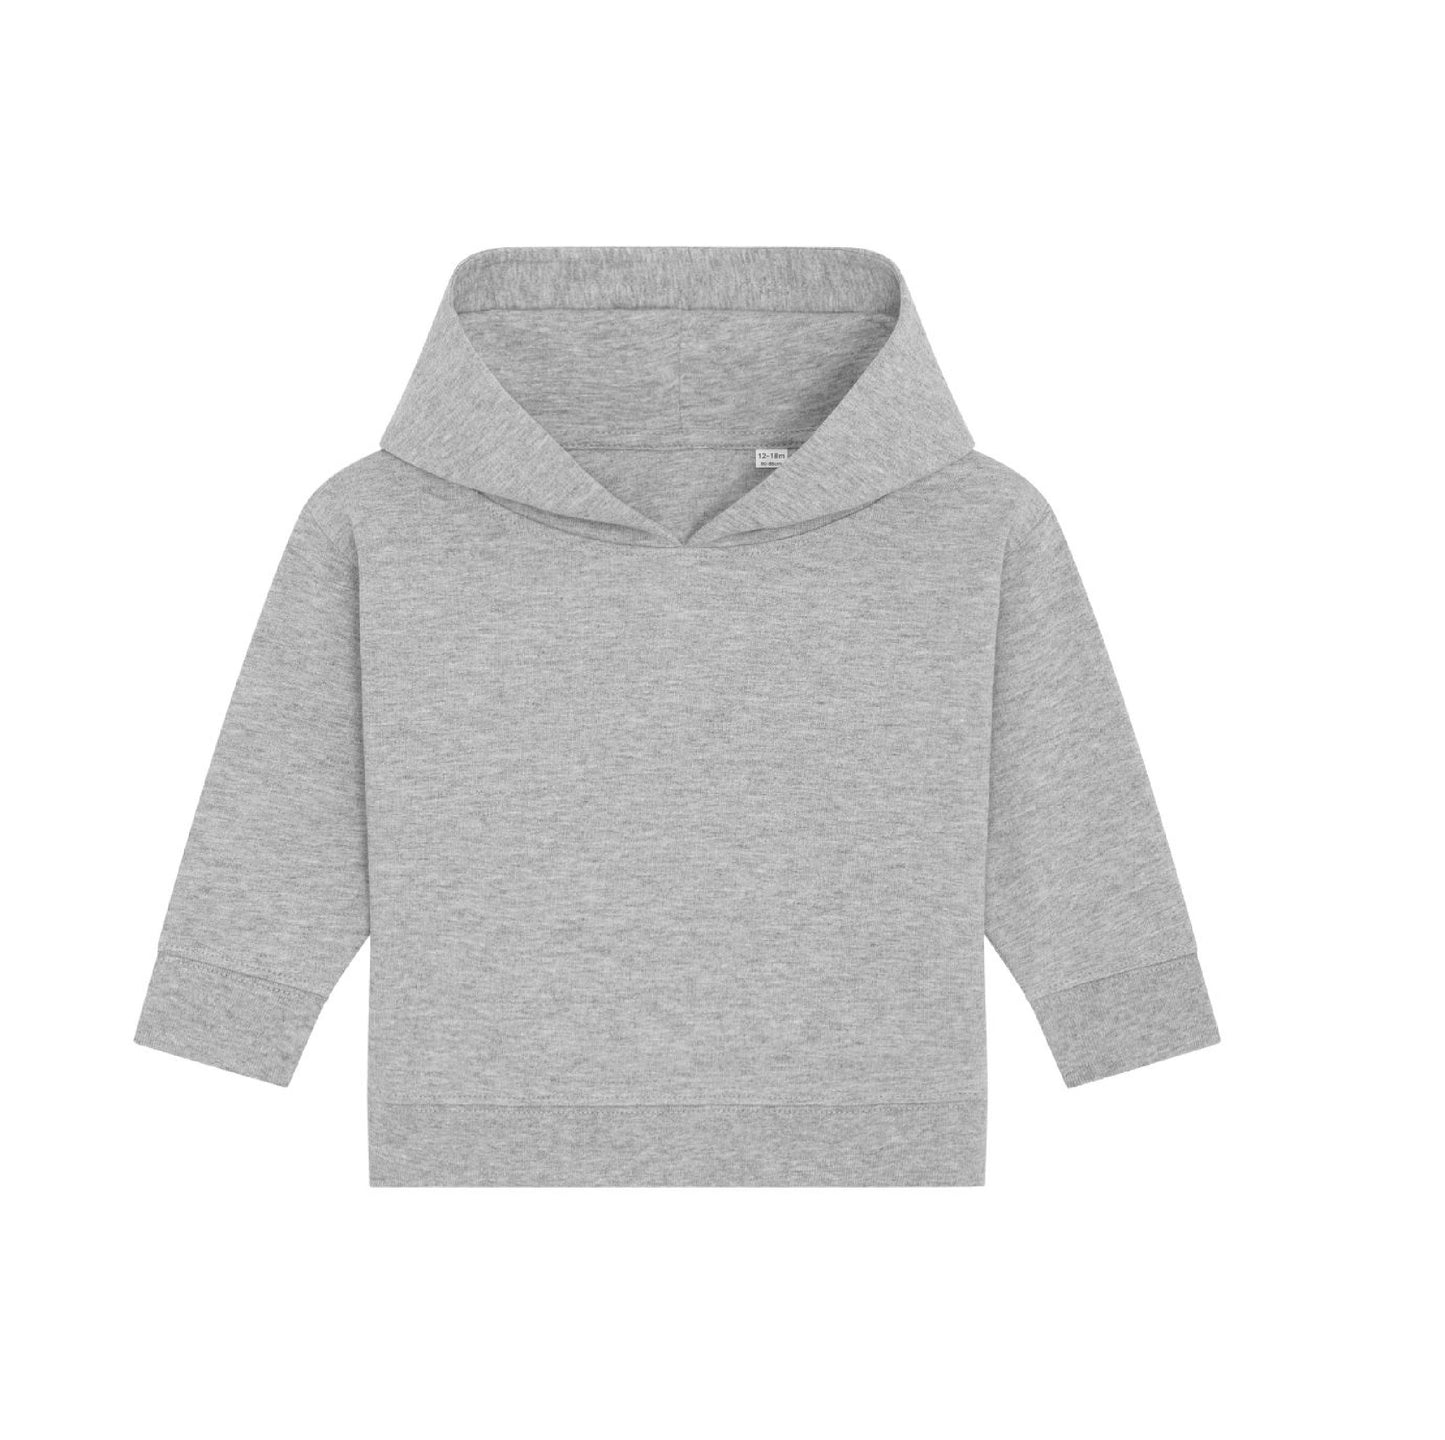 The Iconic Babies' hoodie Sweatshirt